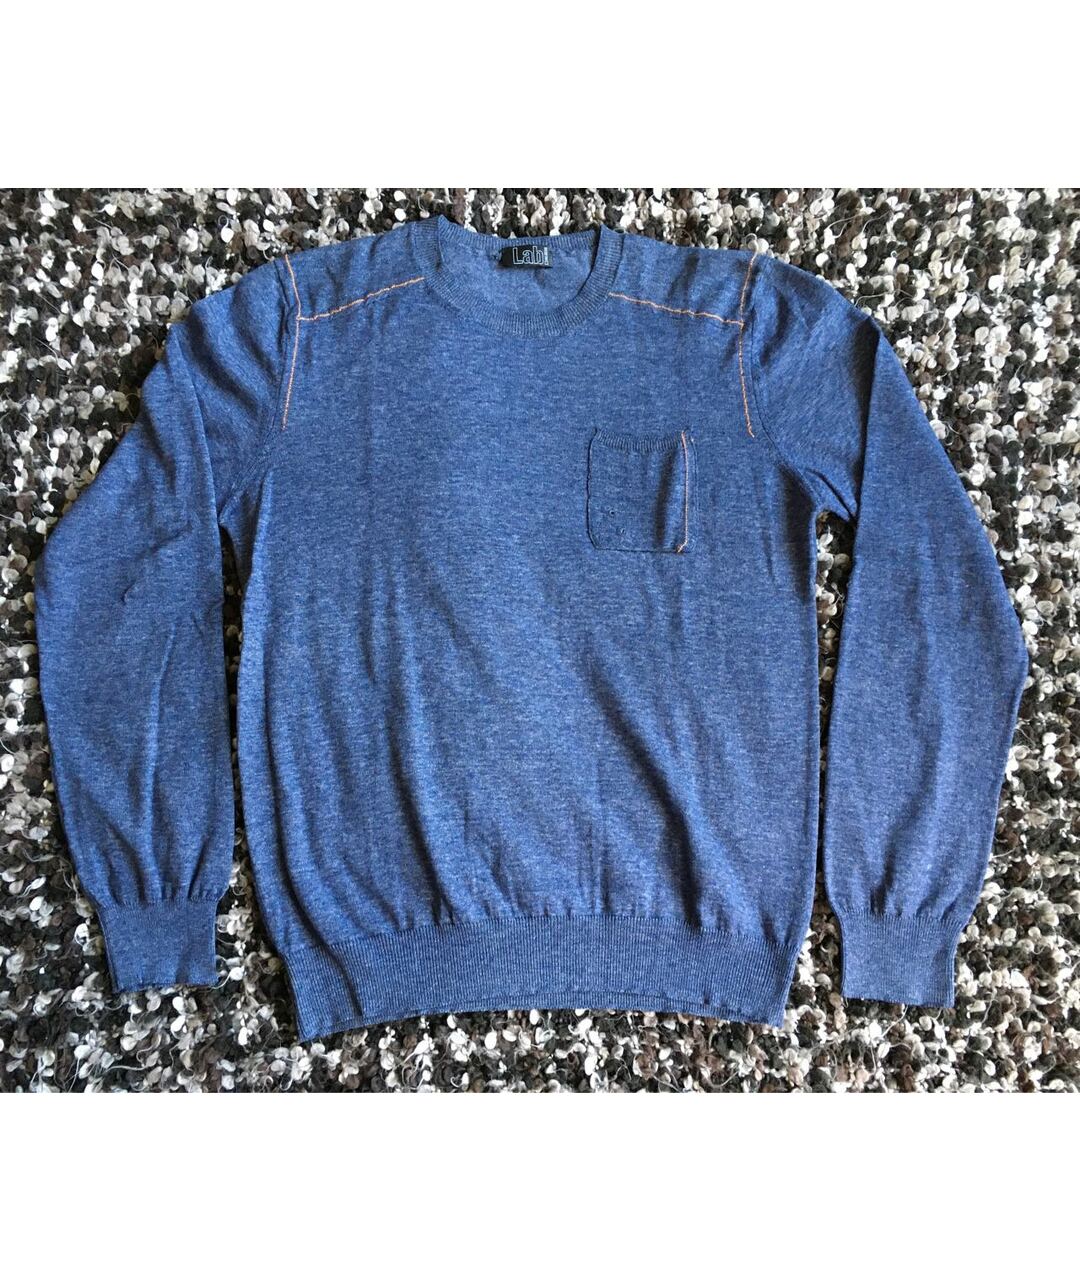 PAL ZILERI Синий хлопковый джемпер / свитер, фото 5